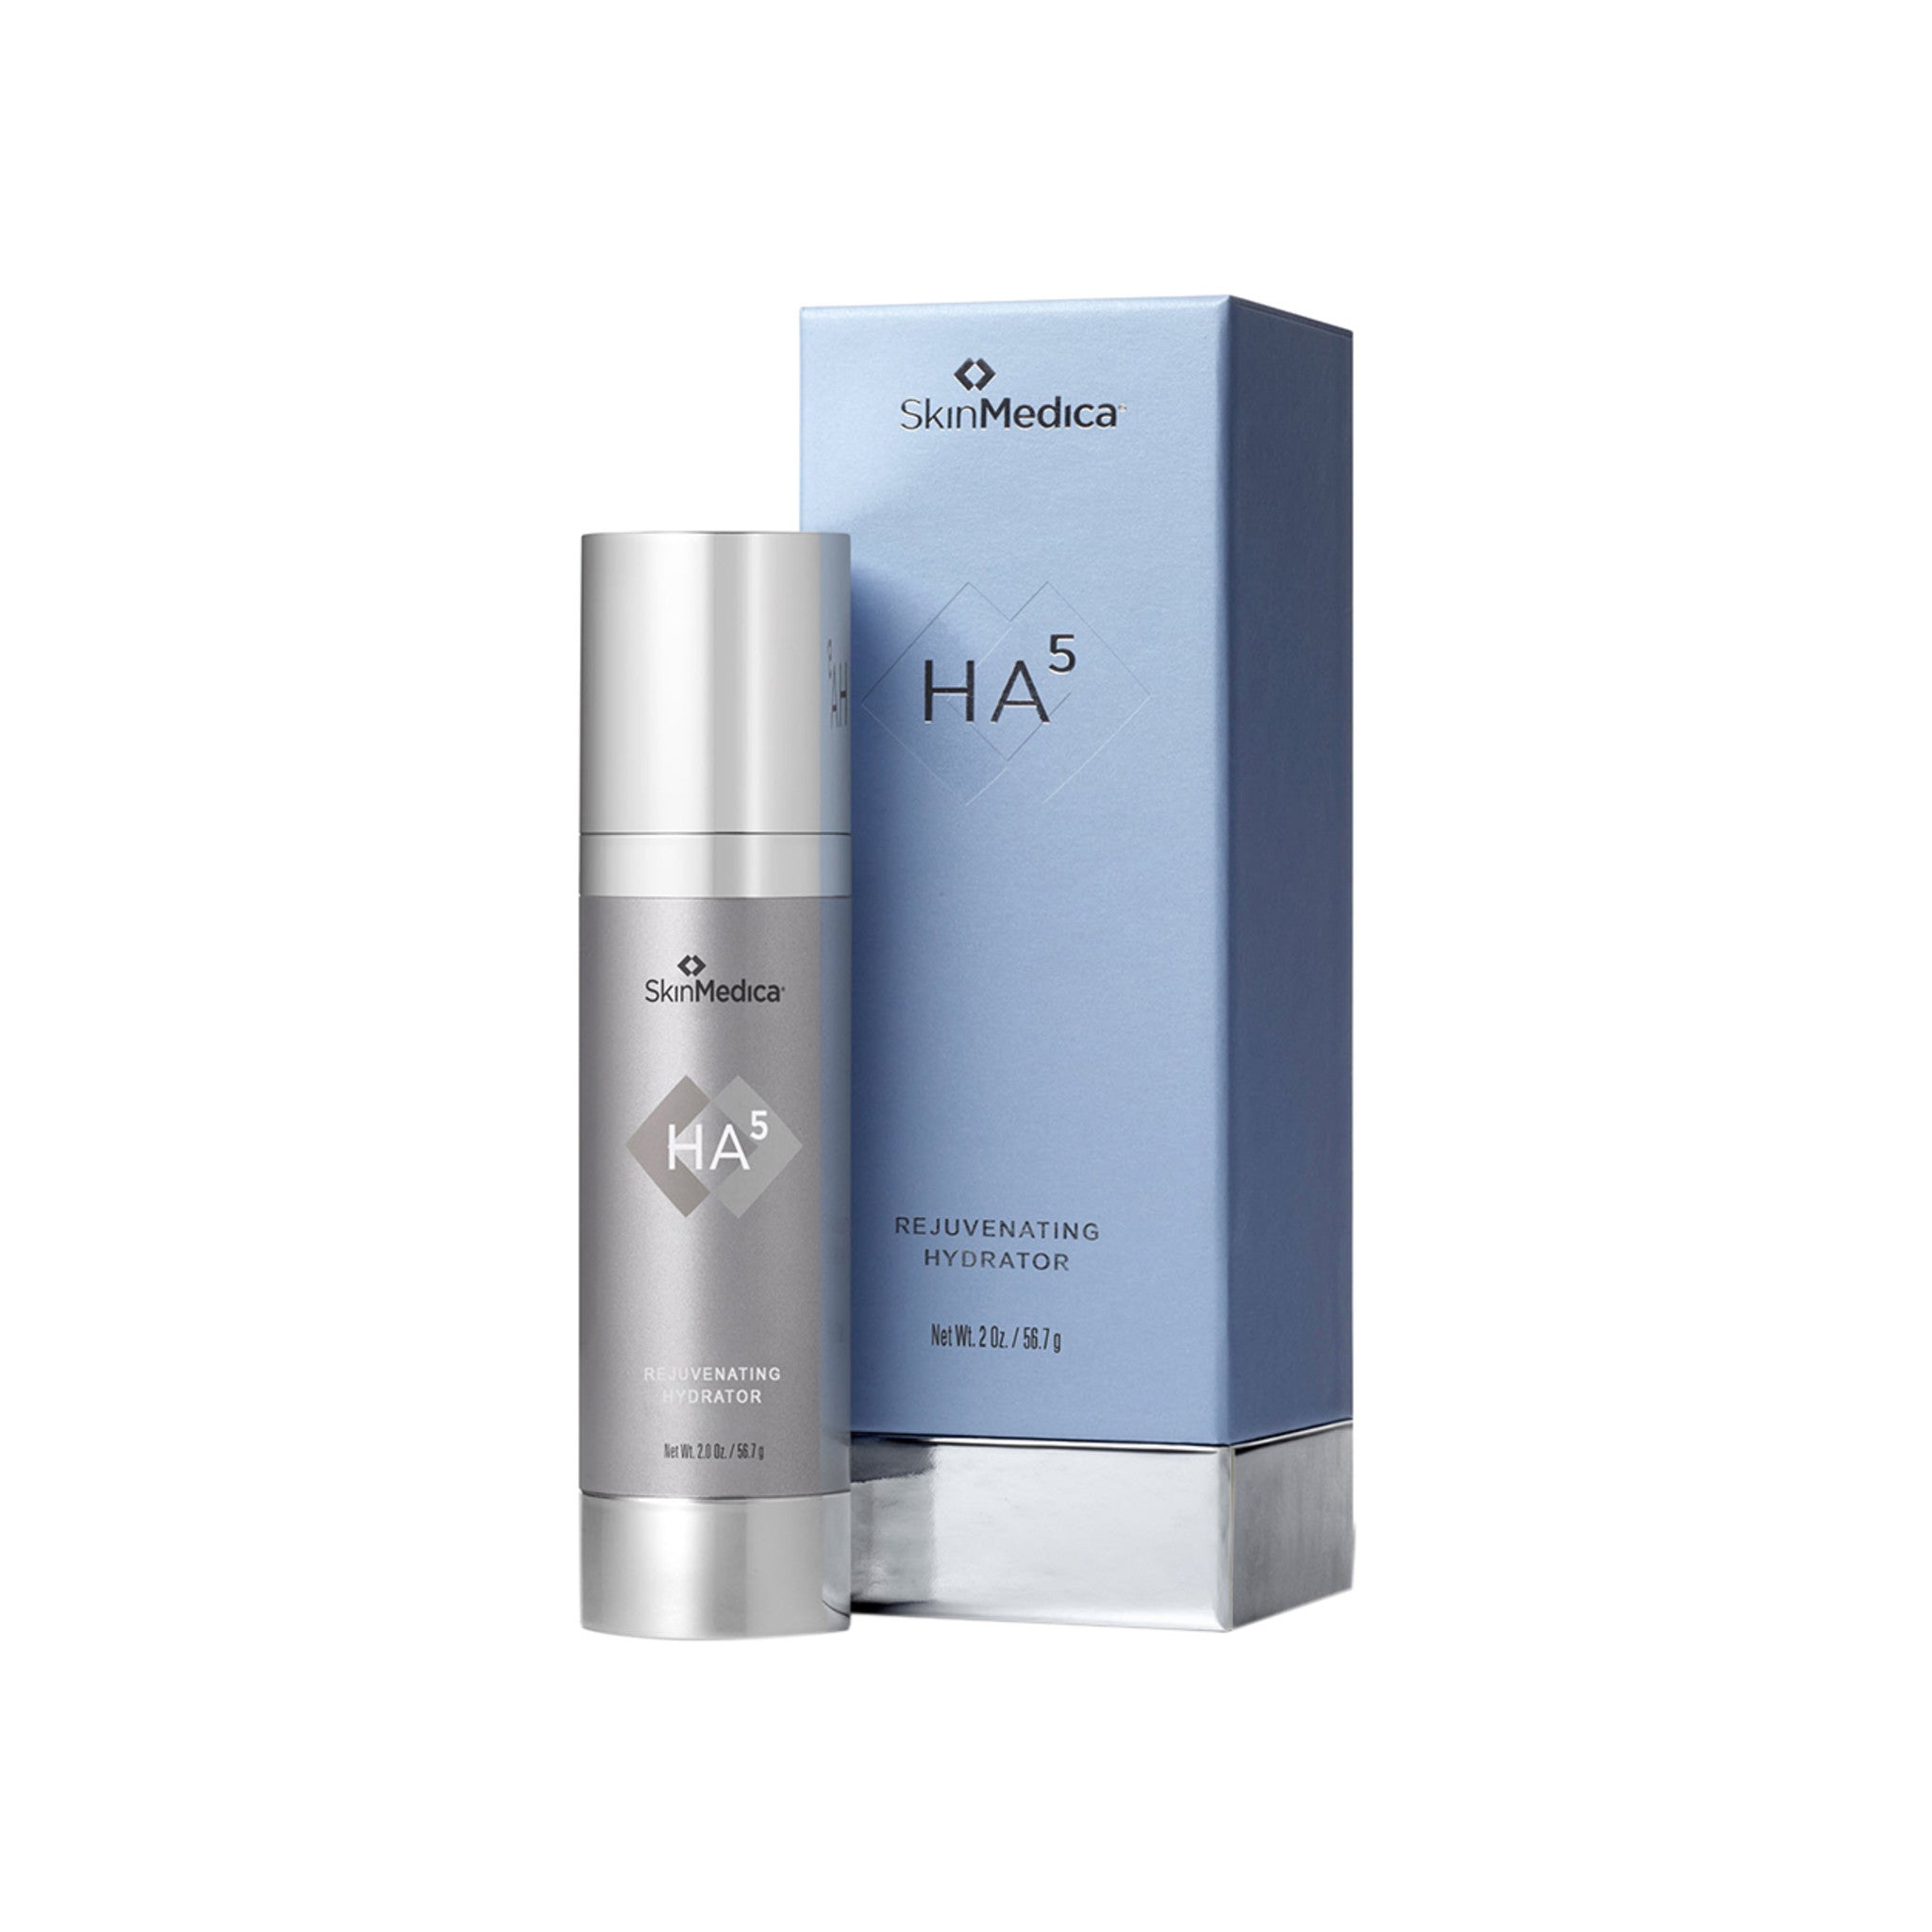 SkinMedica HA5 Rejuvenating Hydrator main image.